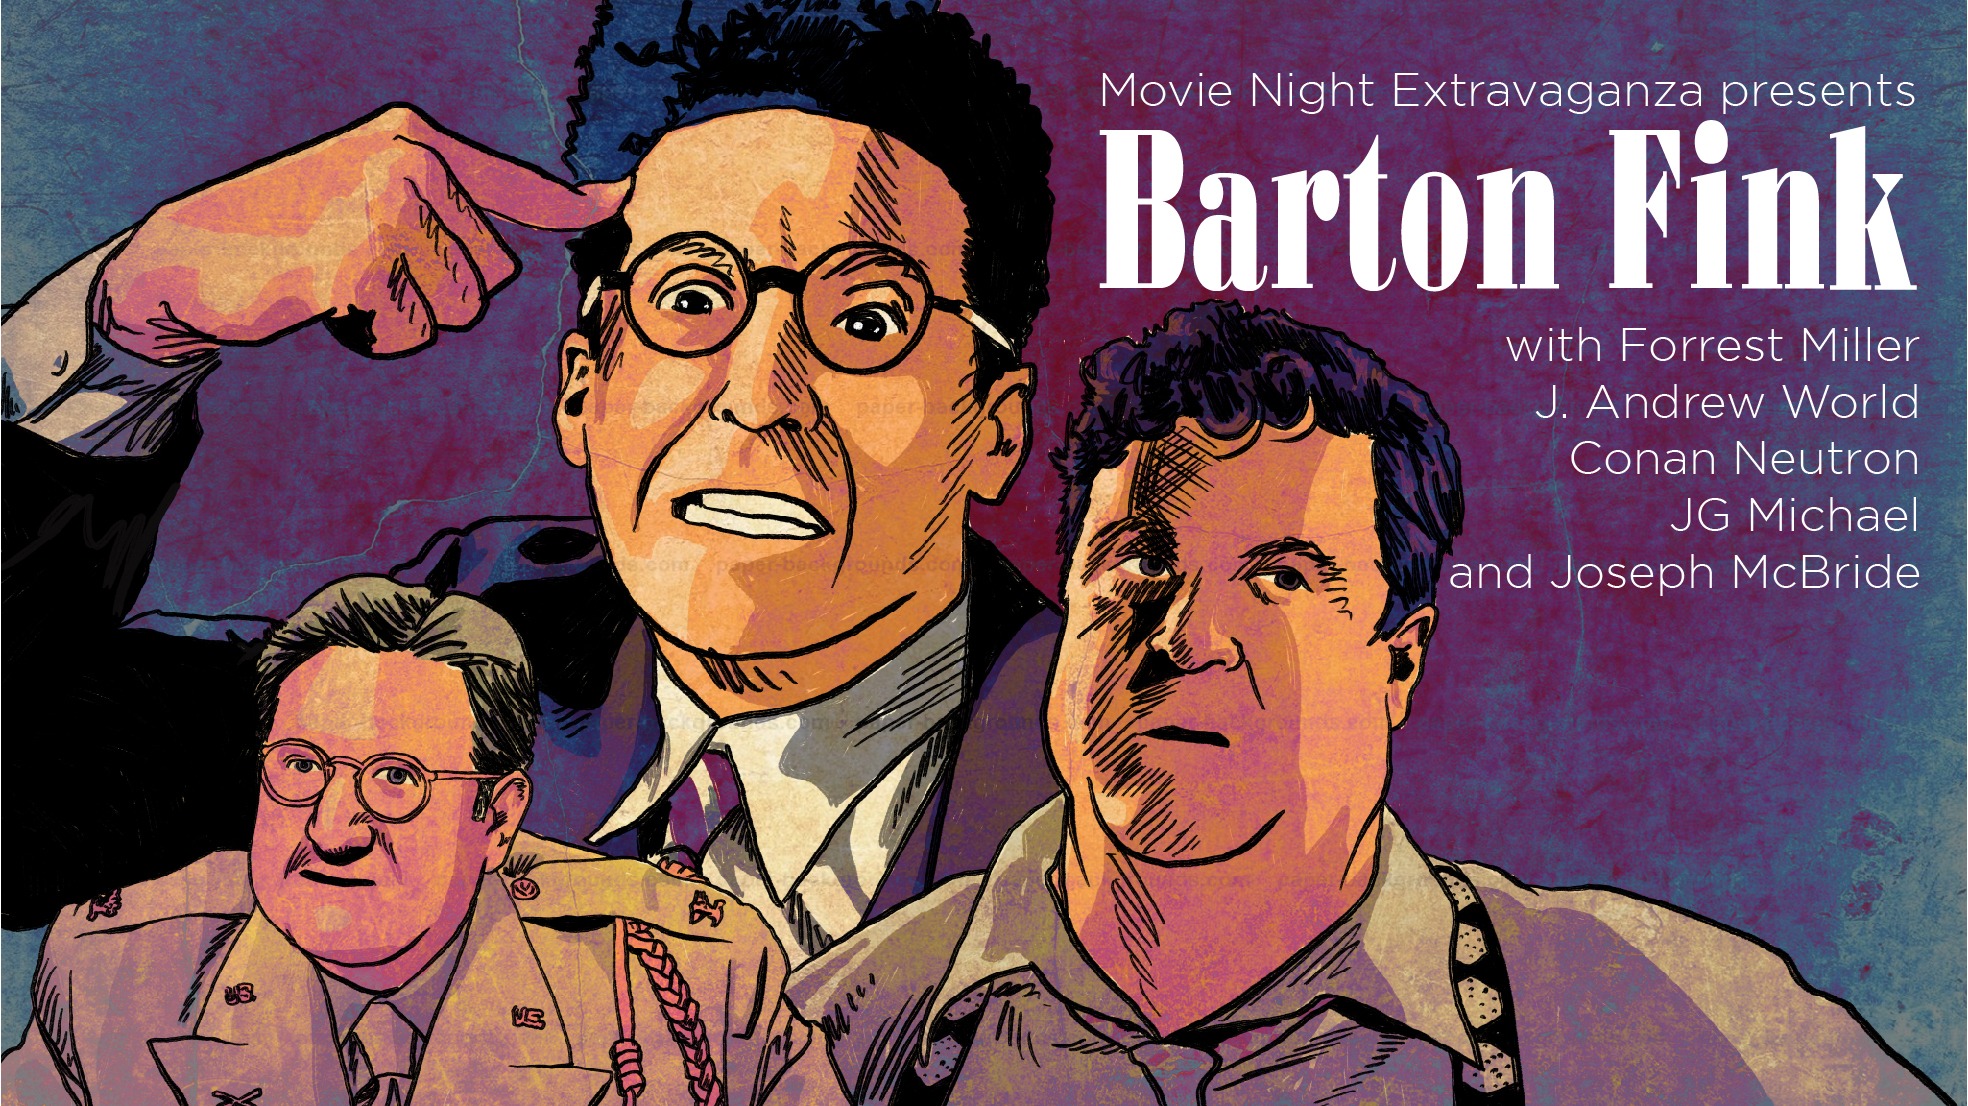 Episode 74: Barton Fink with Joseph McBride